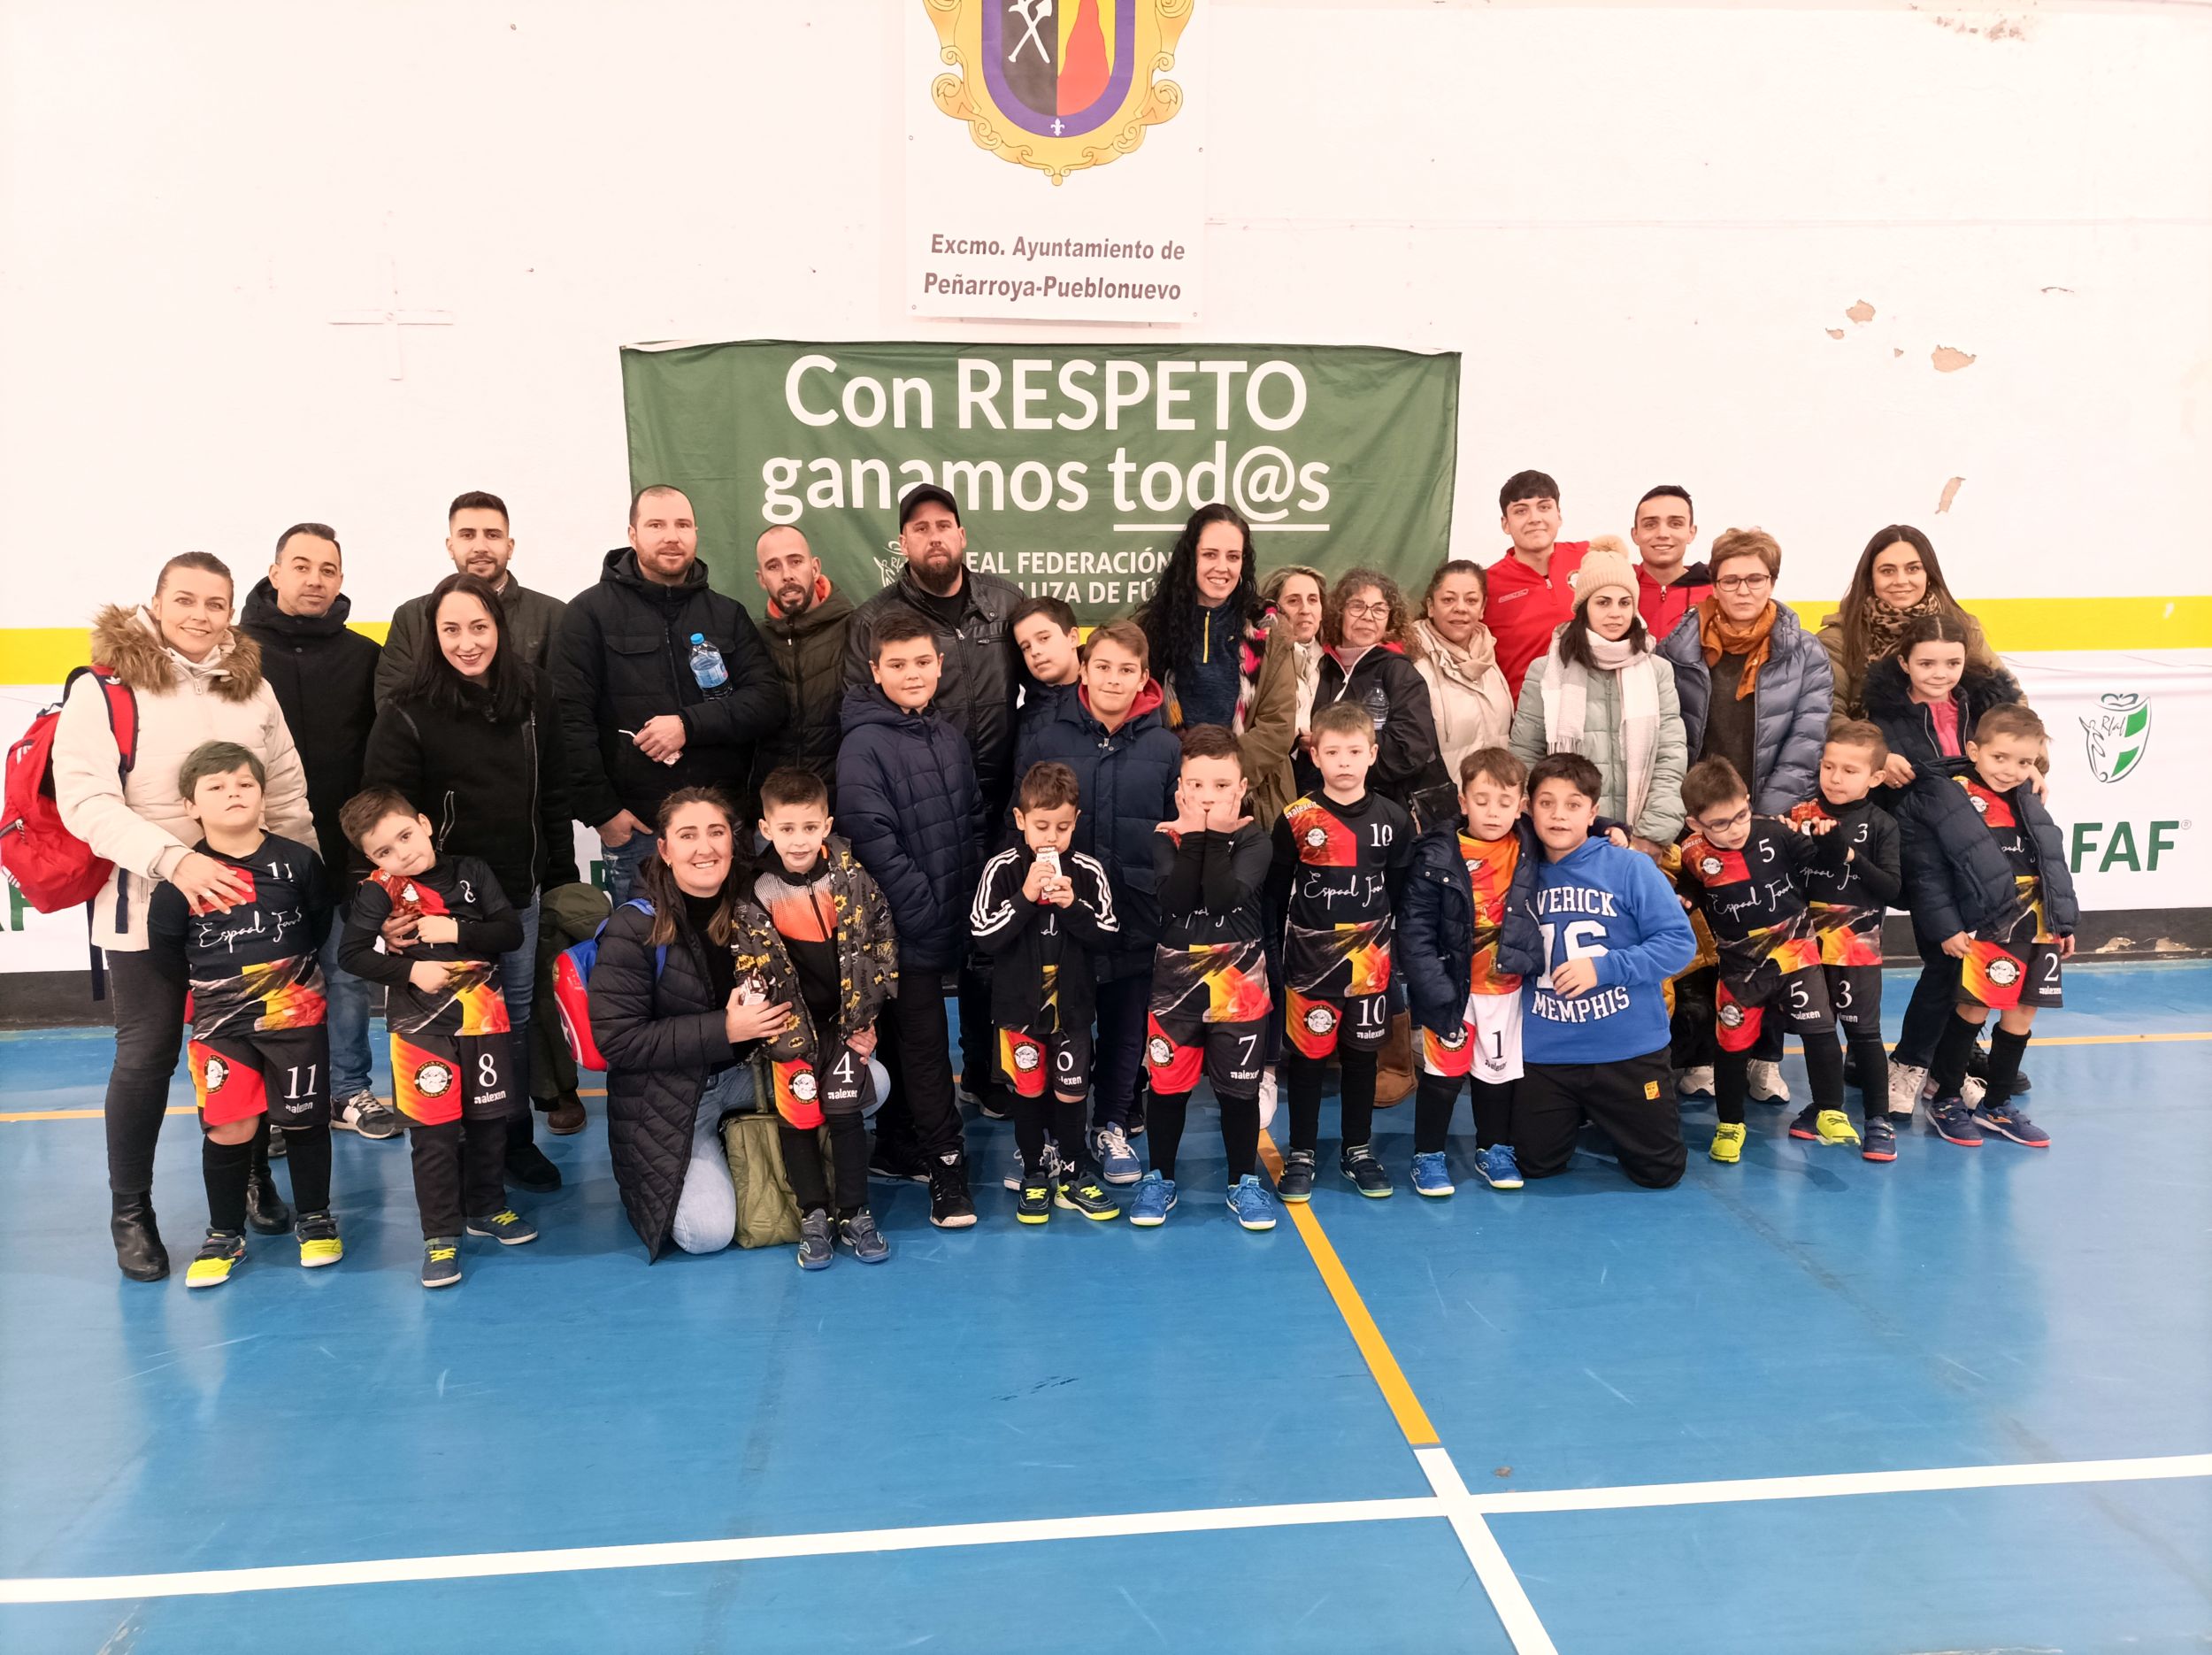 Lección de deportividad en la concentración de fútbol sala de Peñarroya-Pueblonuevo: con respeto, ganamos todos